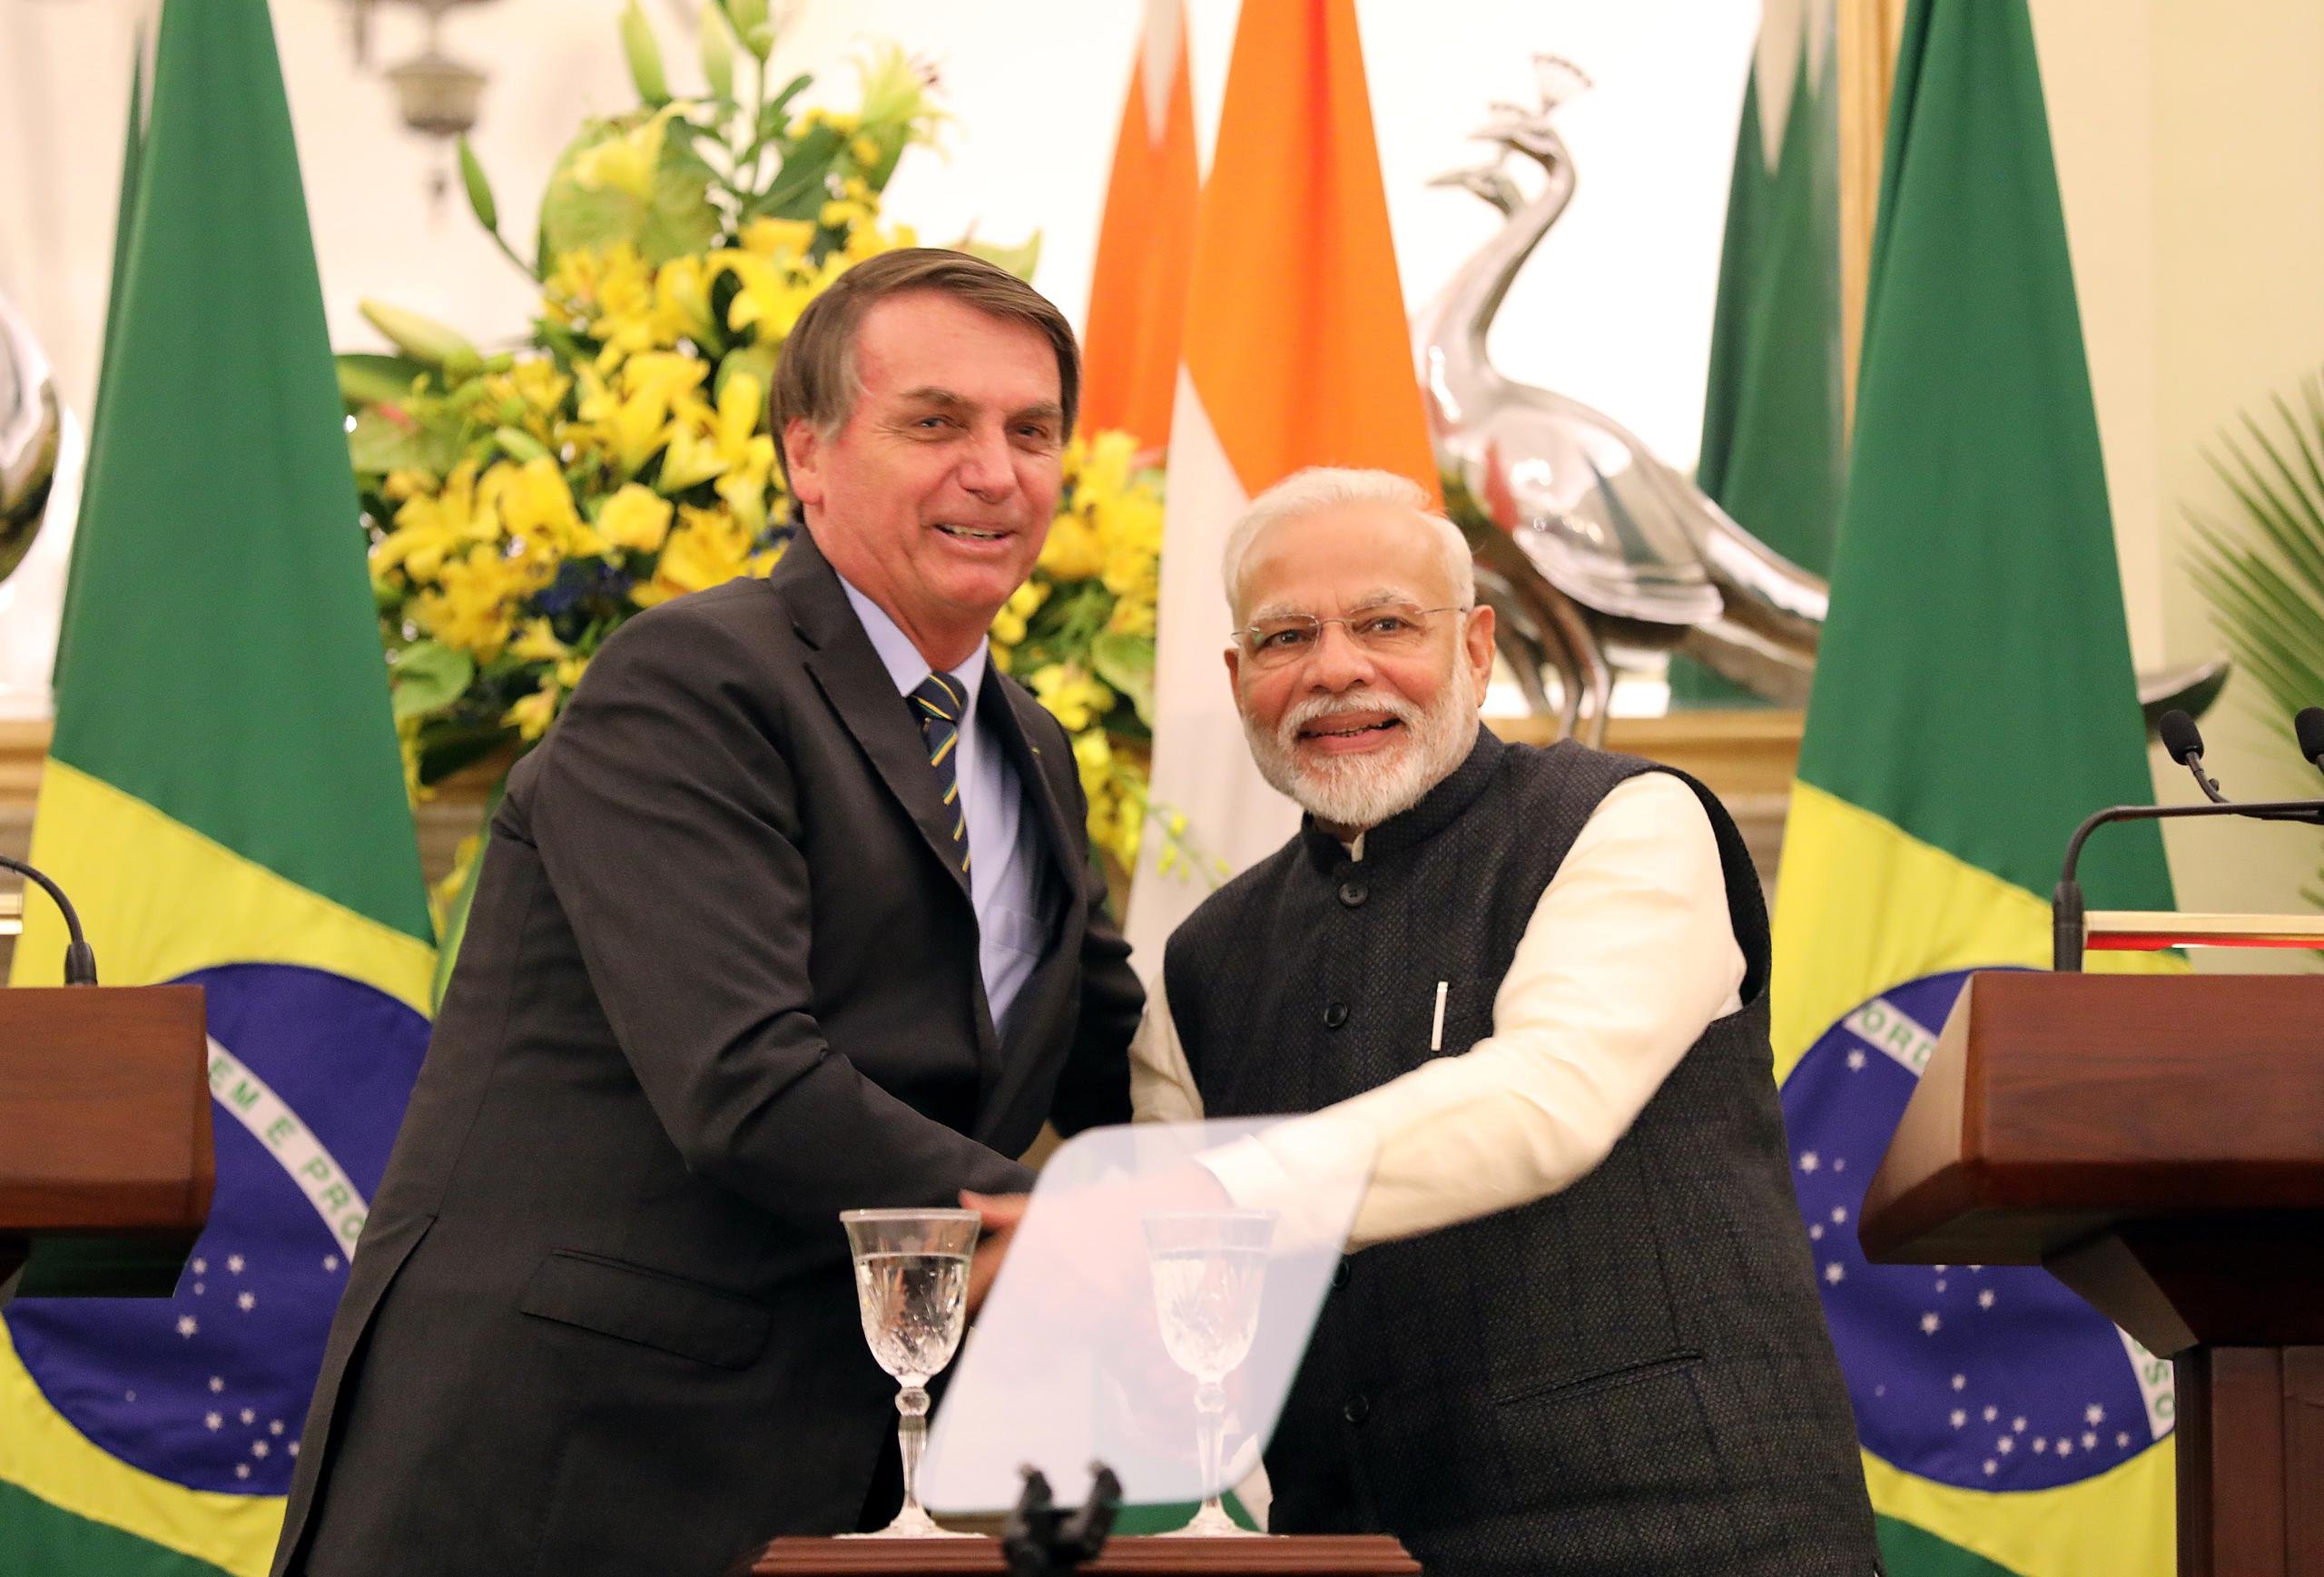 En un comunicado, el Ministerio de Asuntos Exteriores indio destacó también cómo “líderes” de los dos países “identificaron el sector espacial como un área importante de colaboración”, subrayando la firma del primer acuerdo en esta área en 2002.